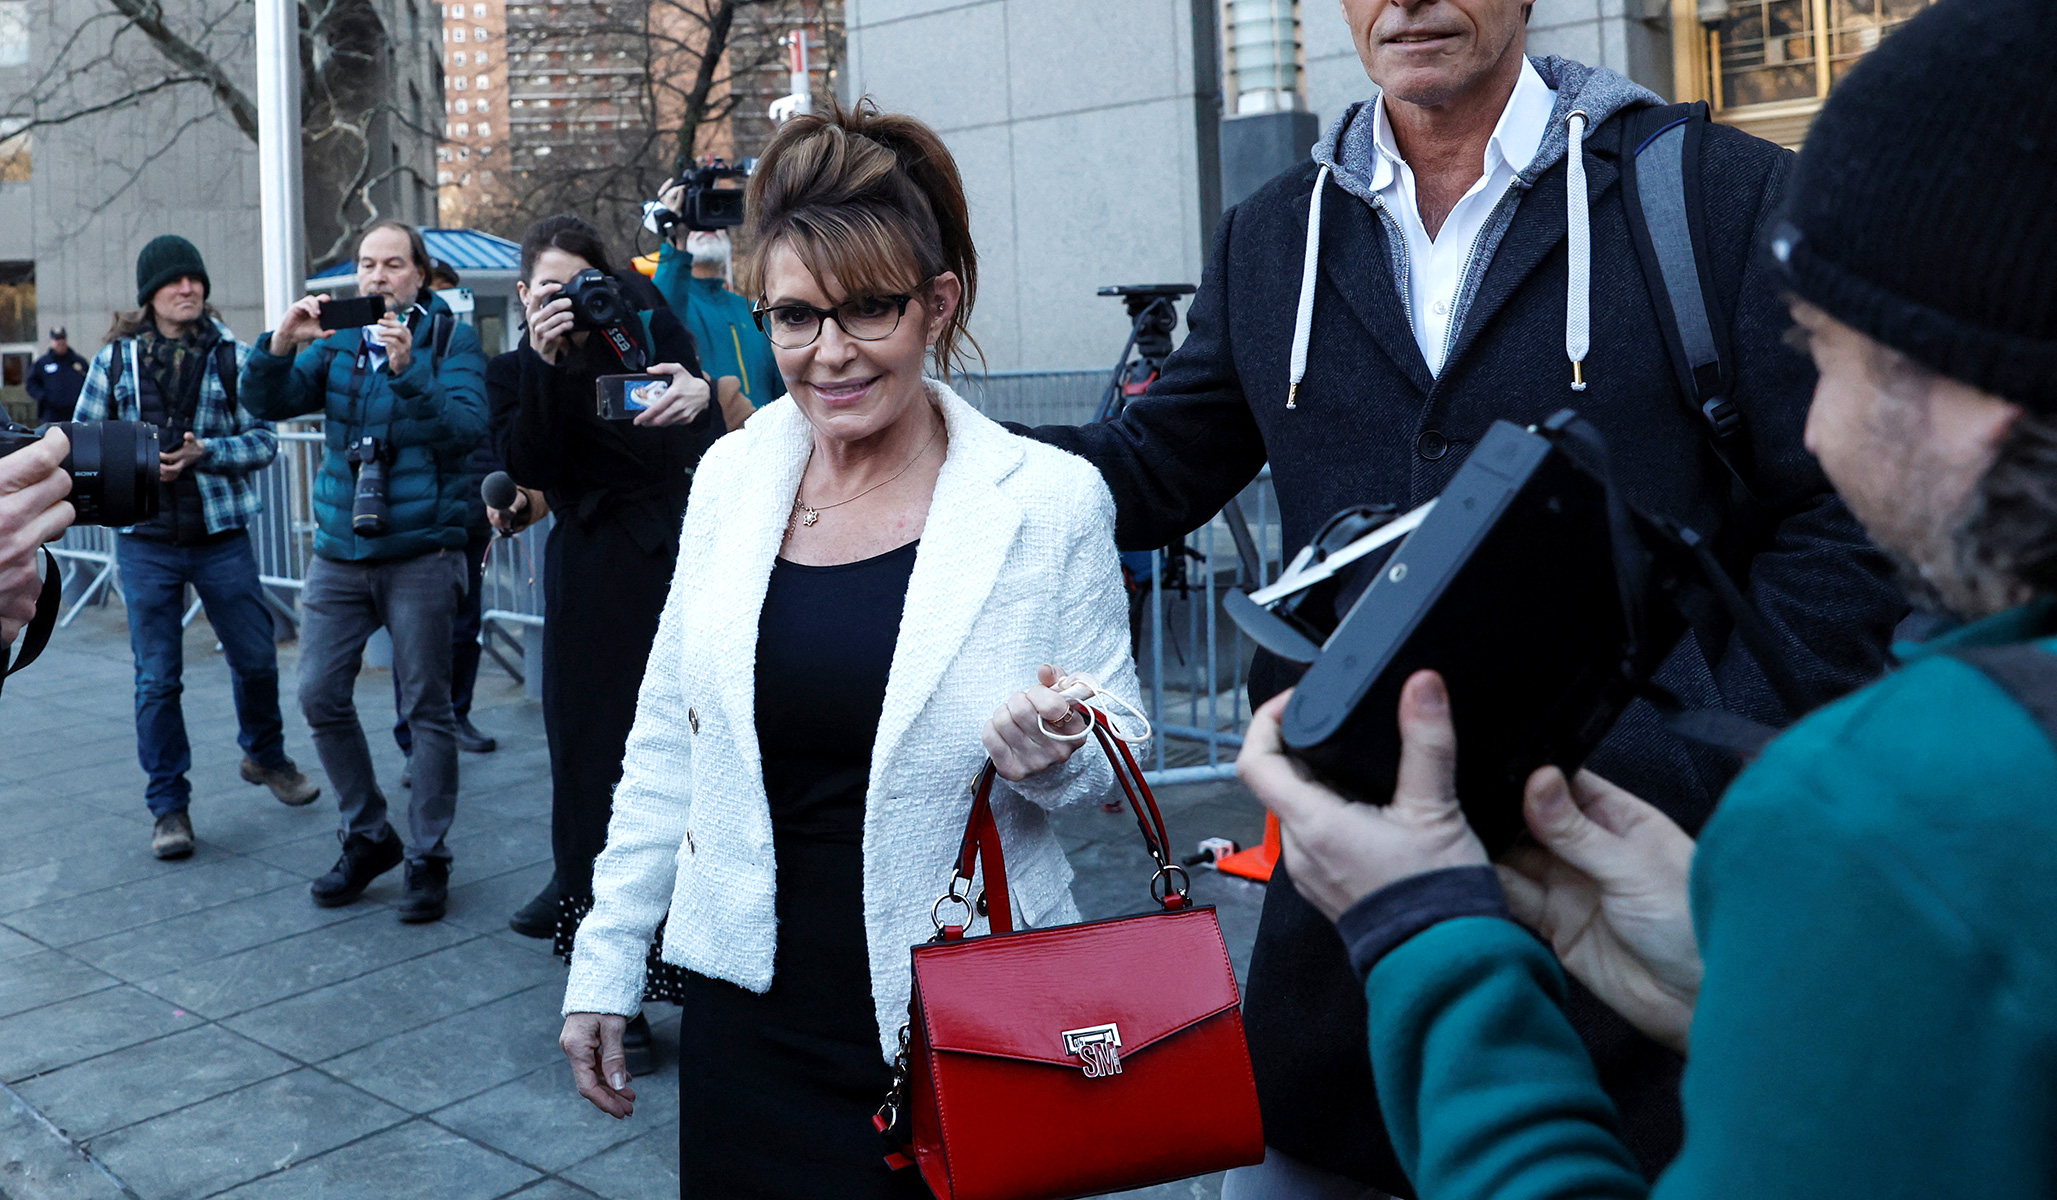 Sarah Palin–NYT Libel Trial Goes to Jury